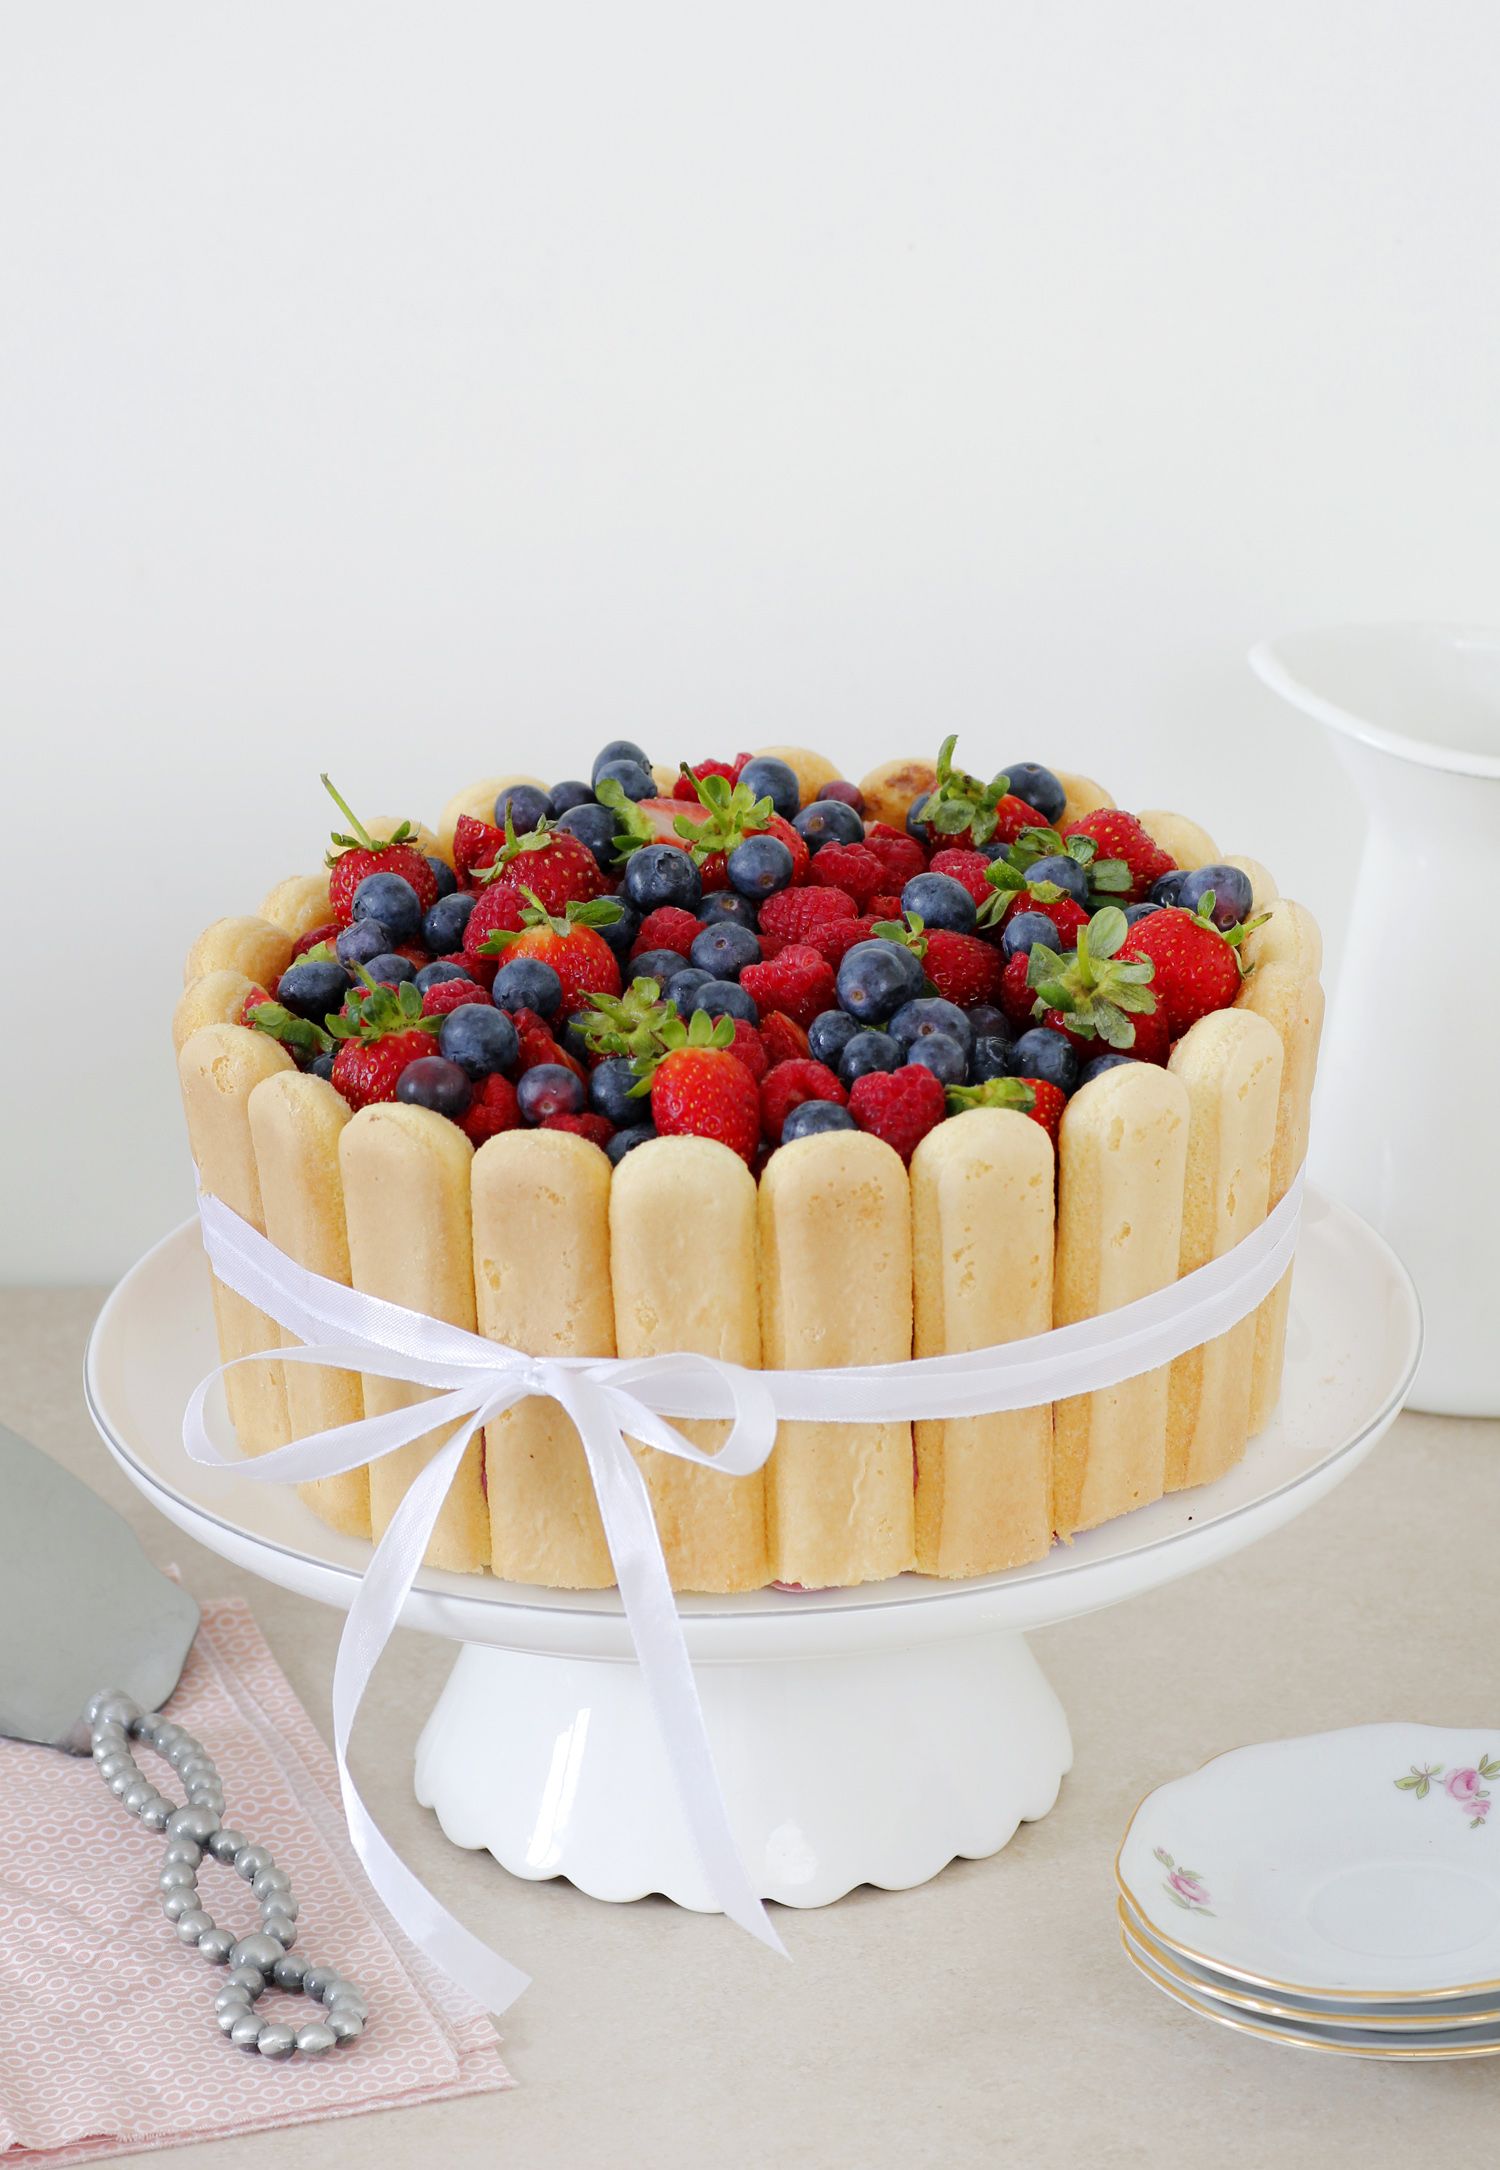 Chocolate and Vanilla Charlotte Cake with Berries